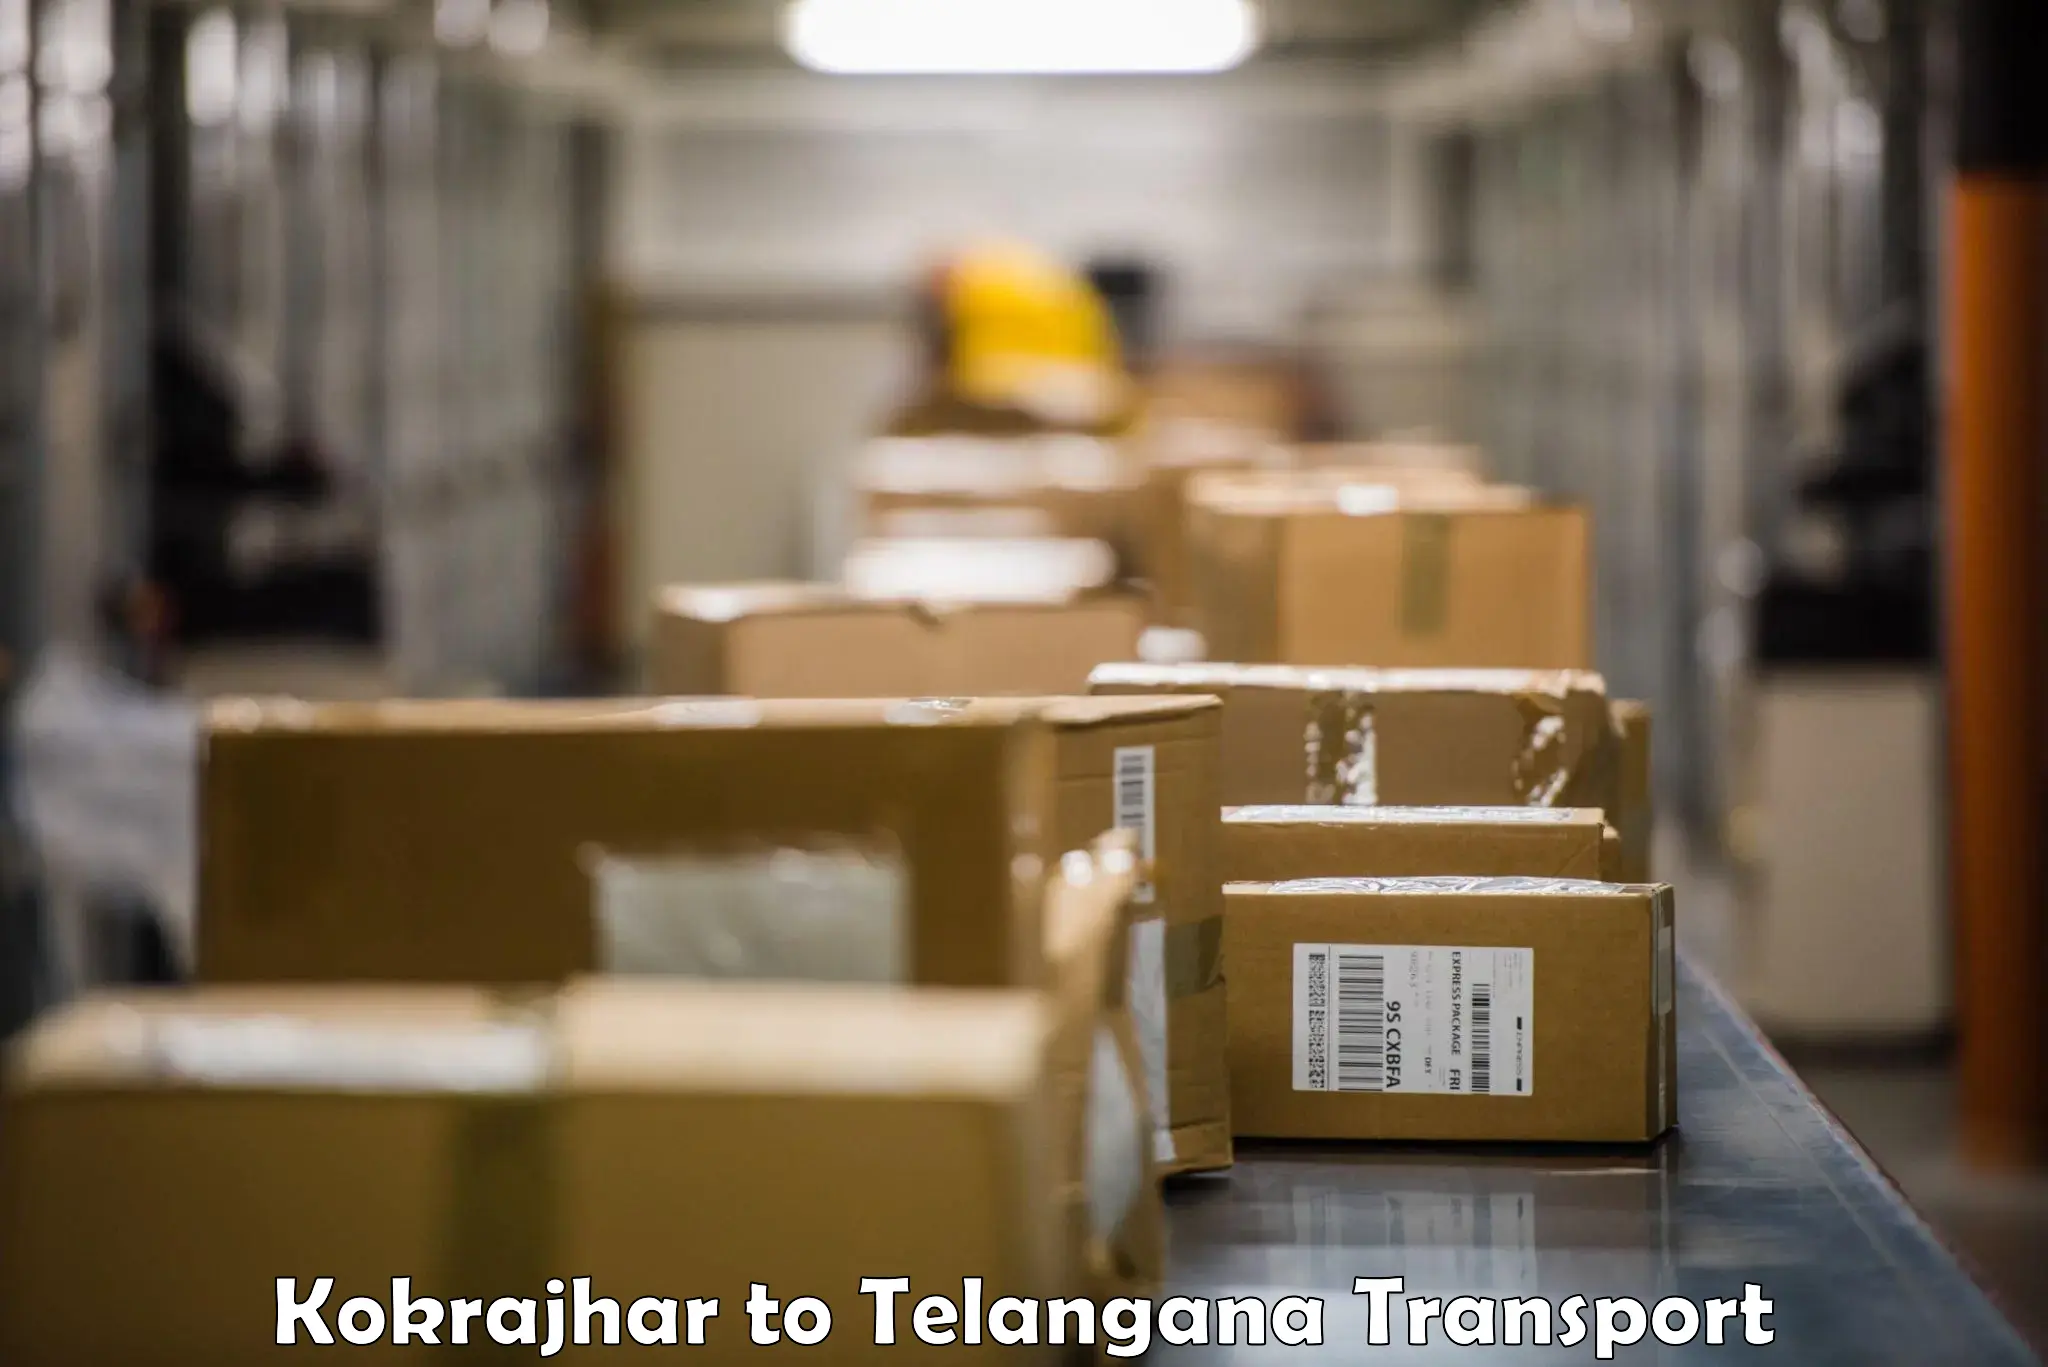 Cargo train transport services Kokrajhar to Shamshabad